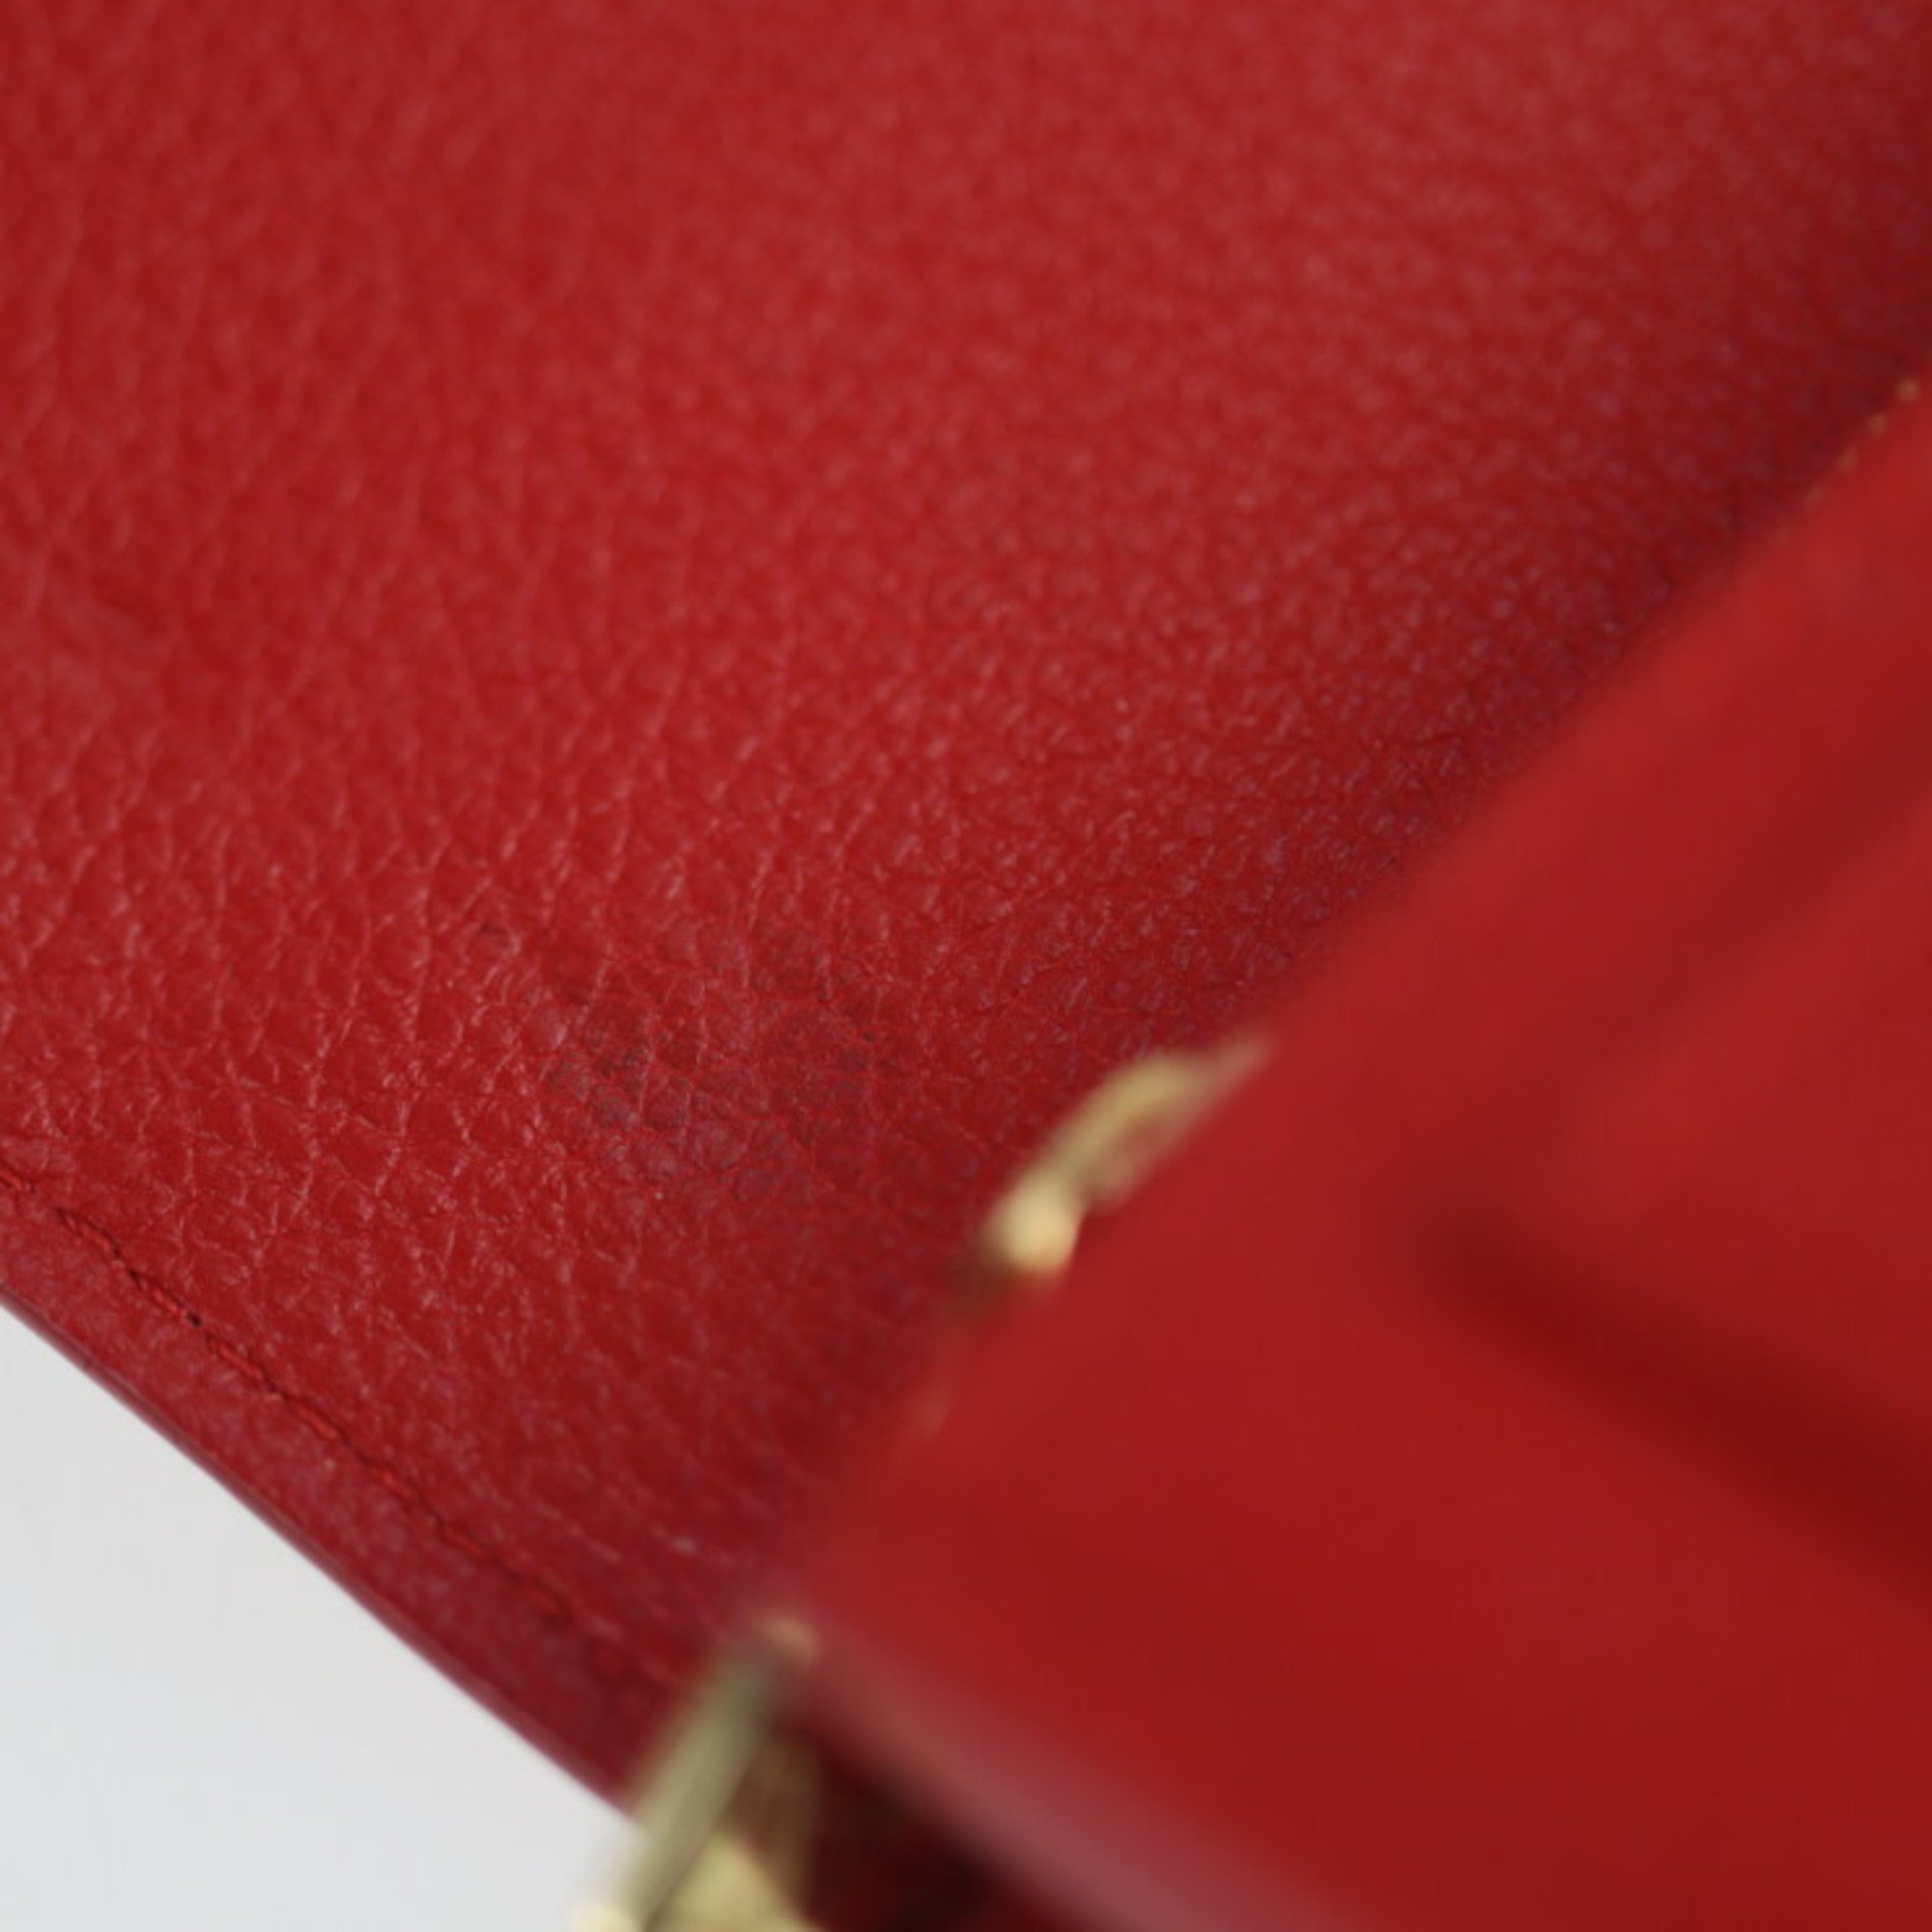 LOUIS VUITTON Louis Vuitton Portefeuille Lock Me Long Wallet M61277 Leather Ruby